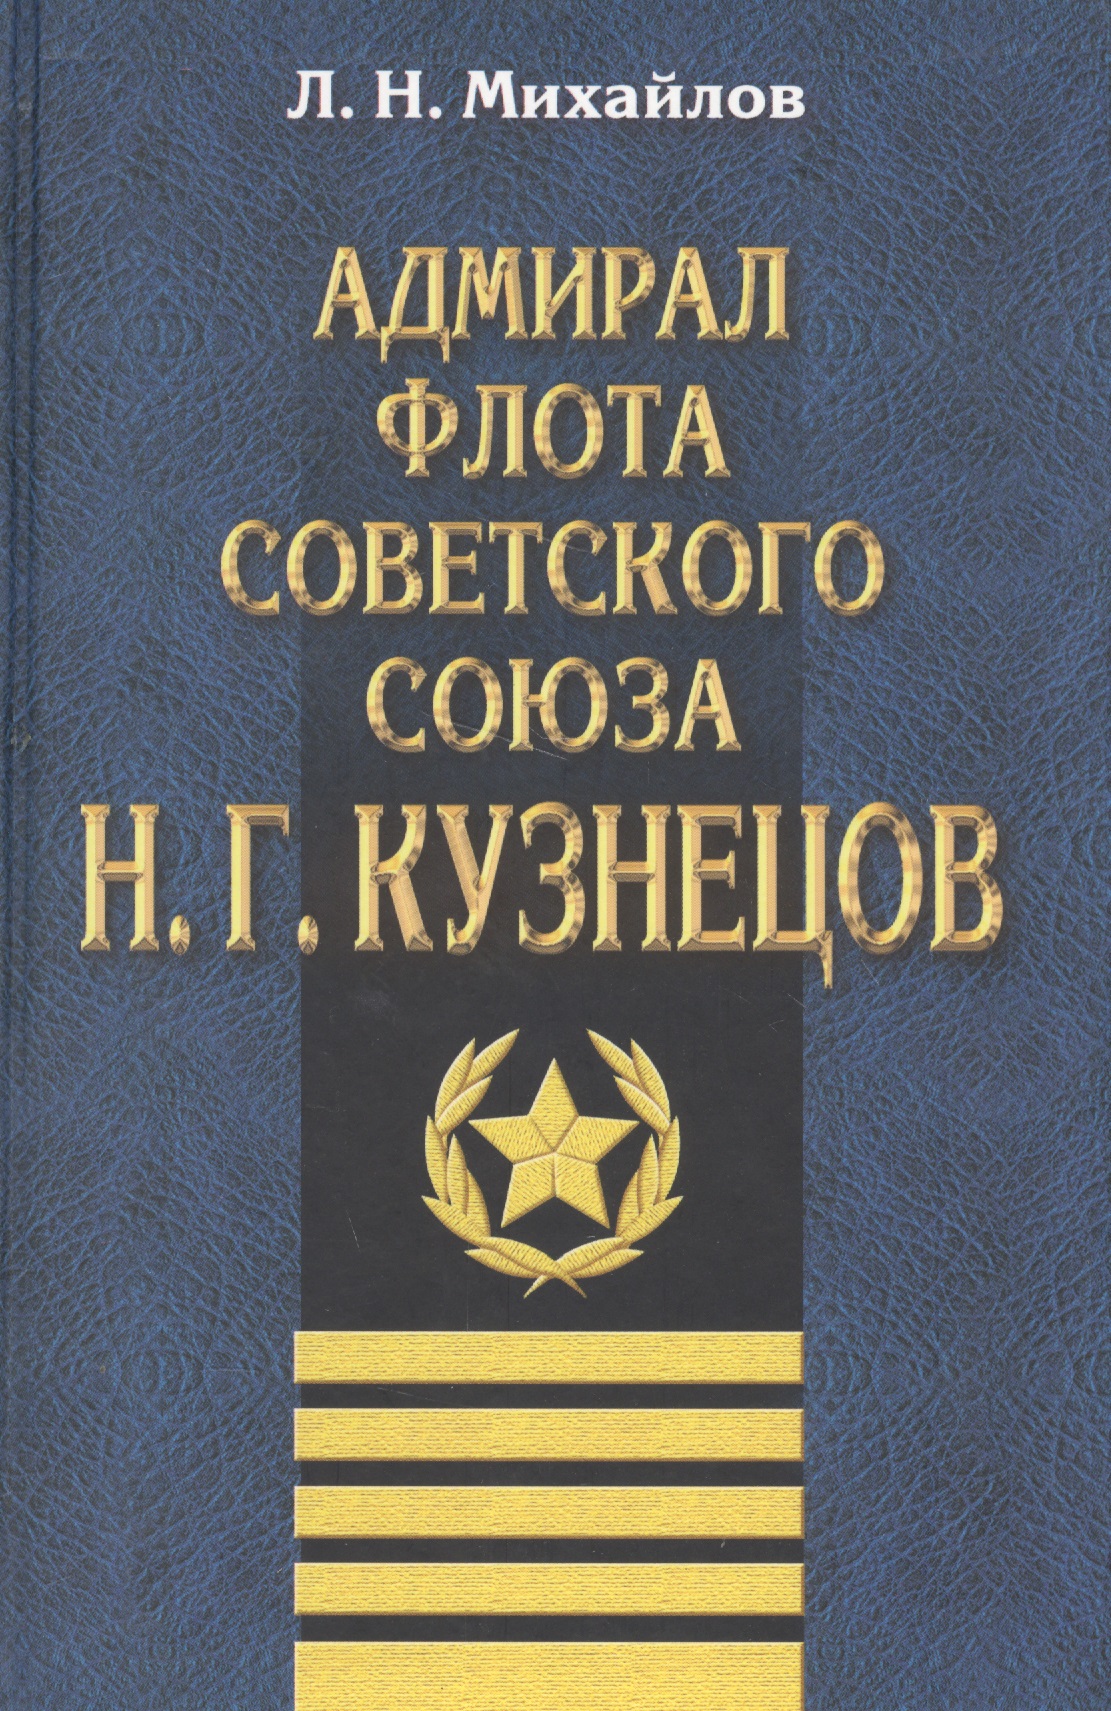 Адмирал флота Советского Союза Н.Г.Кузнецов кузнецов н адмирал советского союза